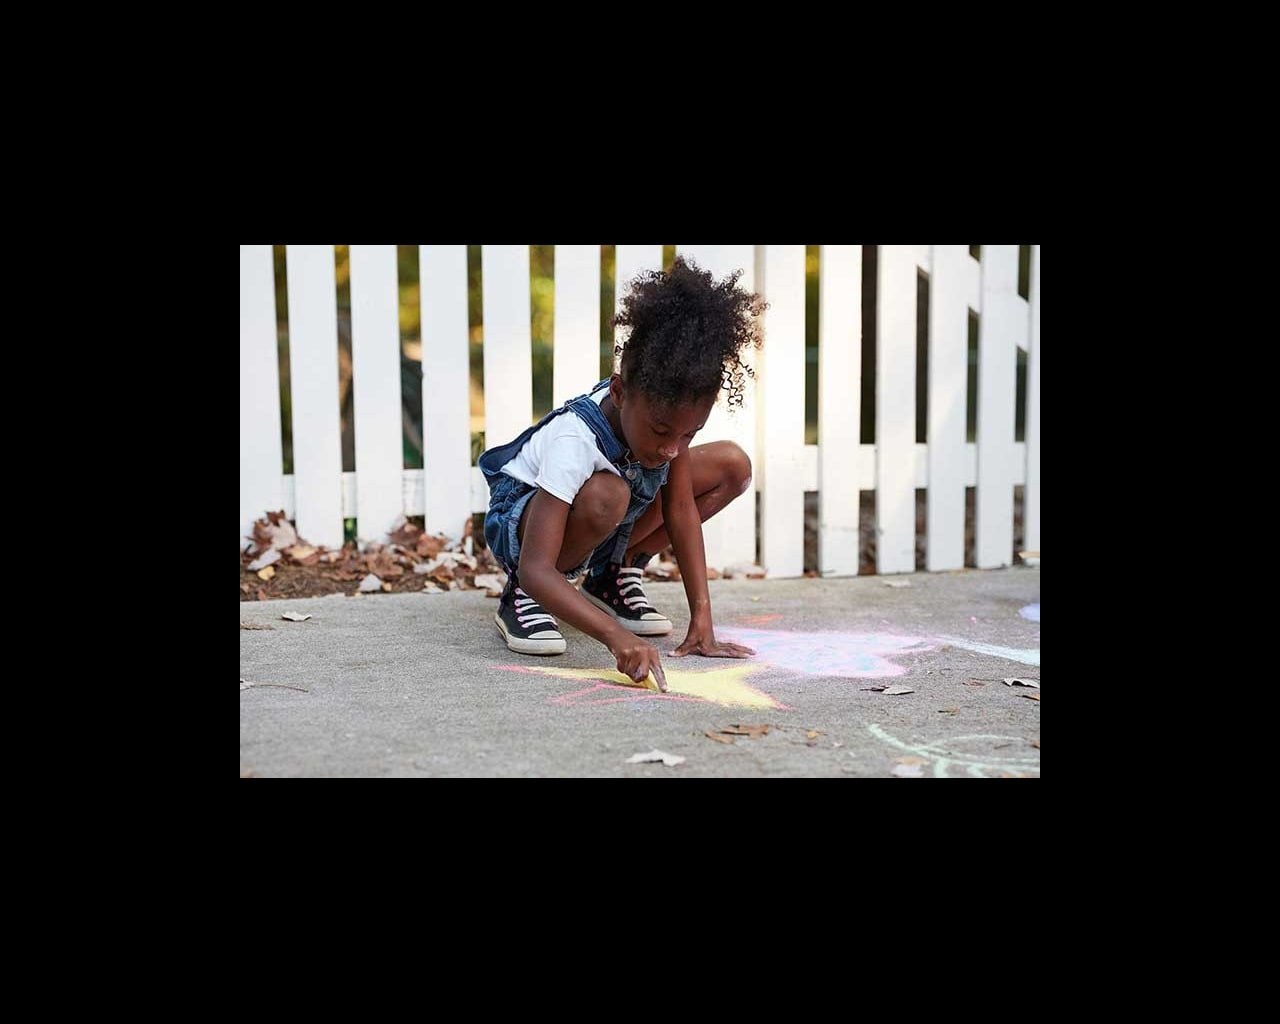 girl drawing with sidewalk chalk